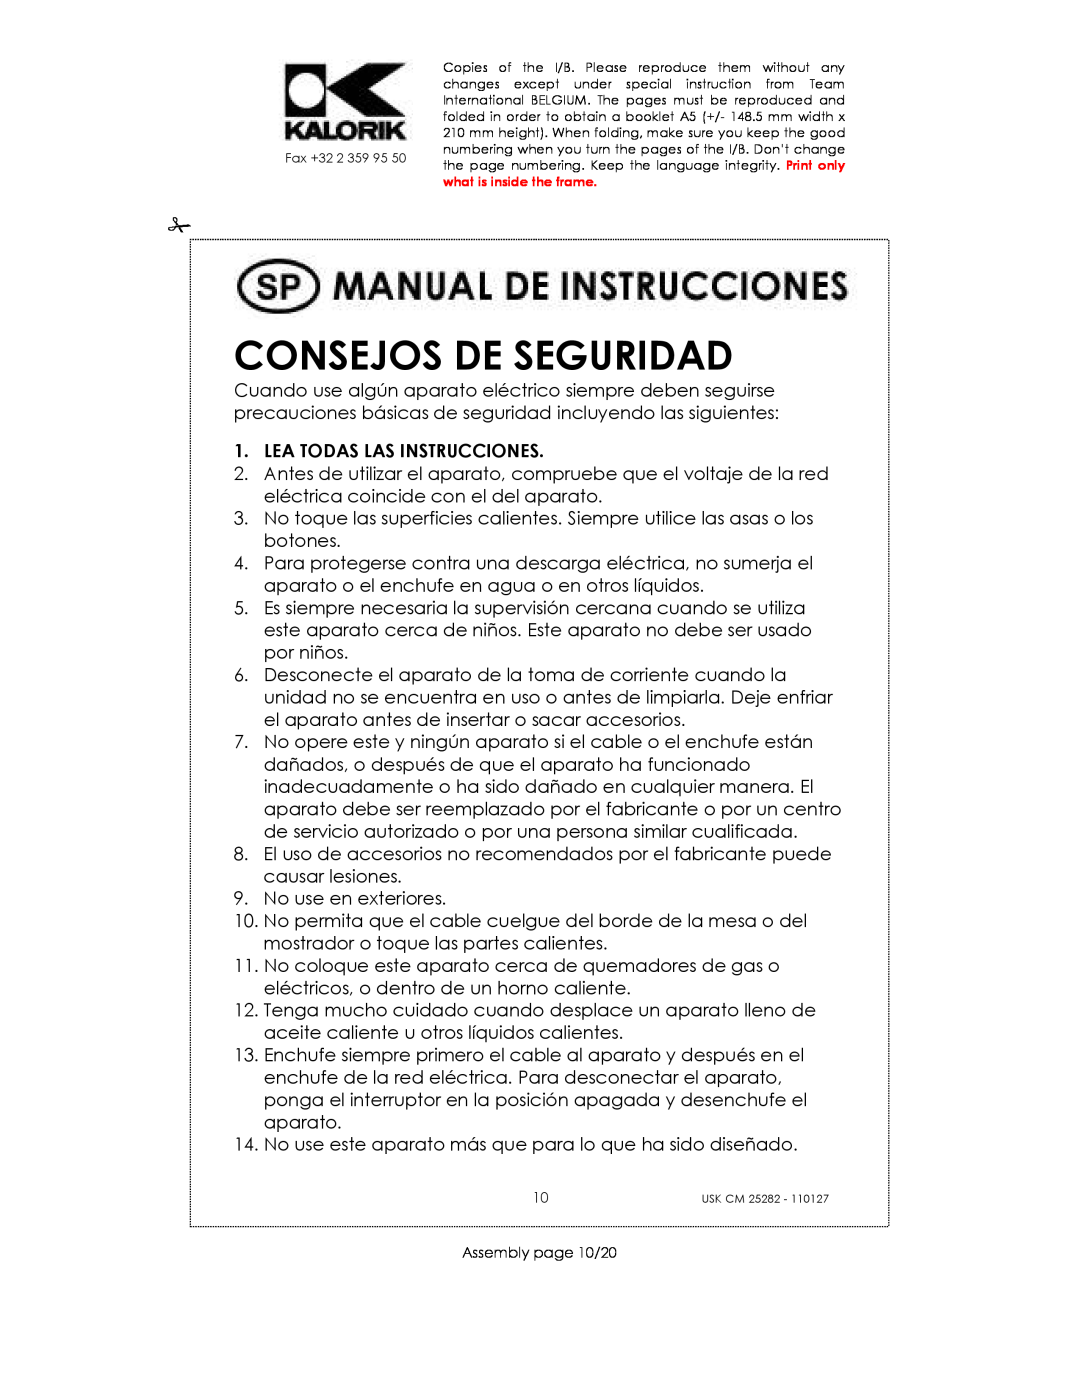 Kalorik USK CM 25282 manual Consejos De Seguridad, Lea Todas Las Instrucciones 